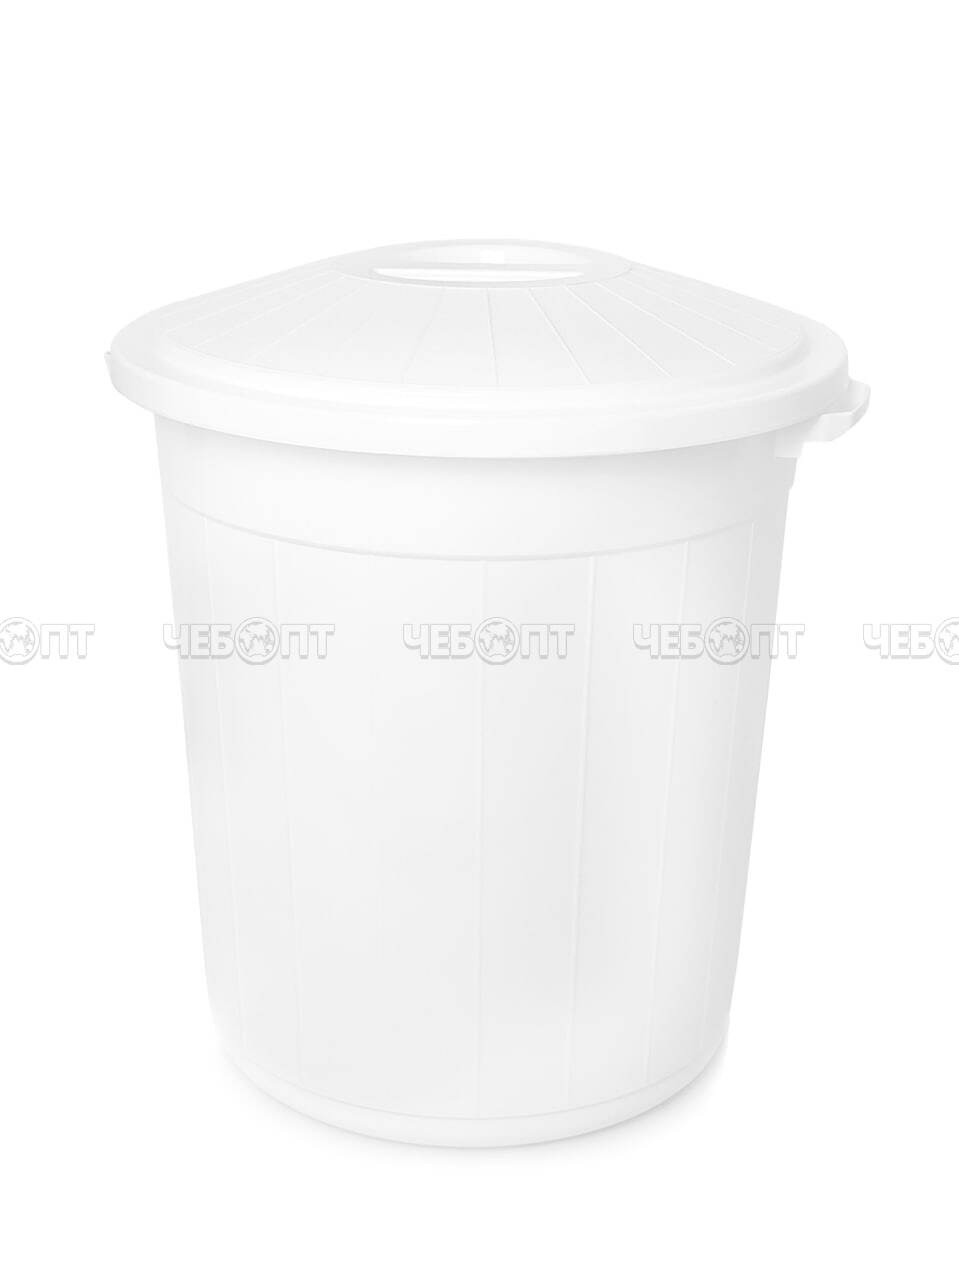 Бак пластиковый 35 л для пищевых продуктов с крышкой [10] ЧЗП. ЧЕБОПТ.